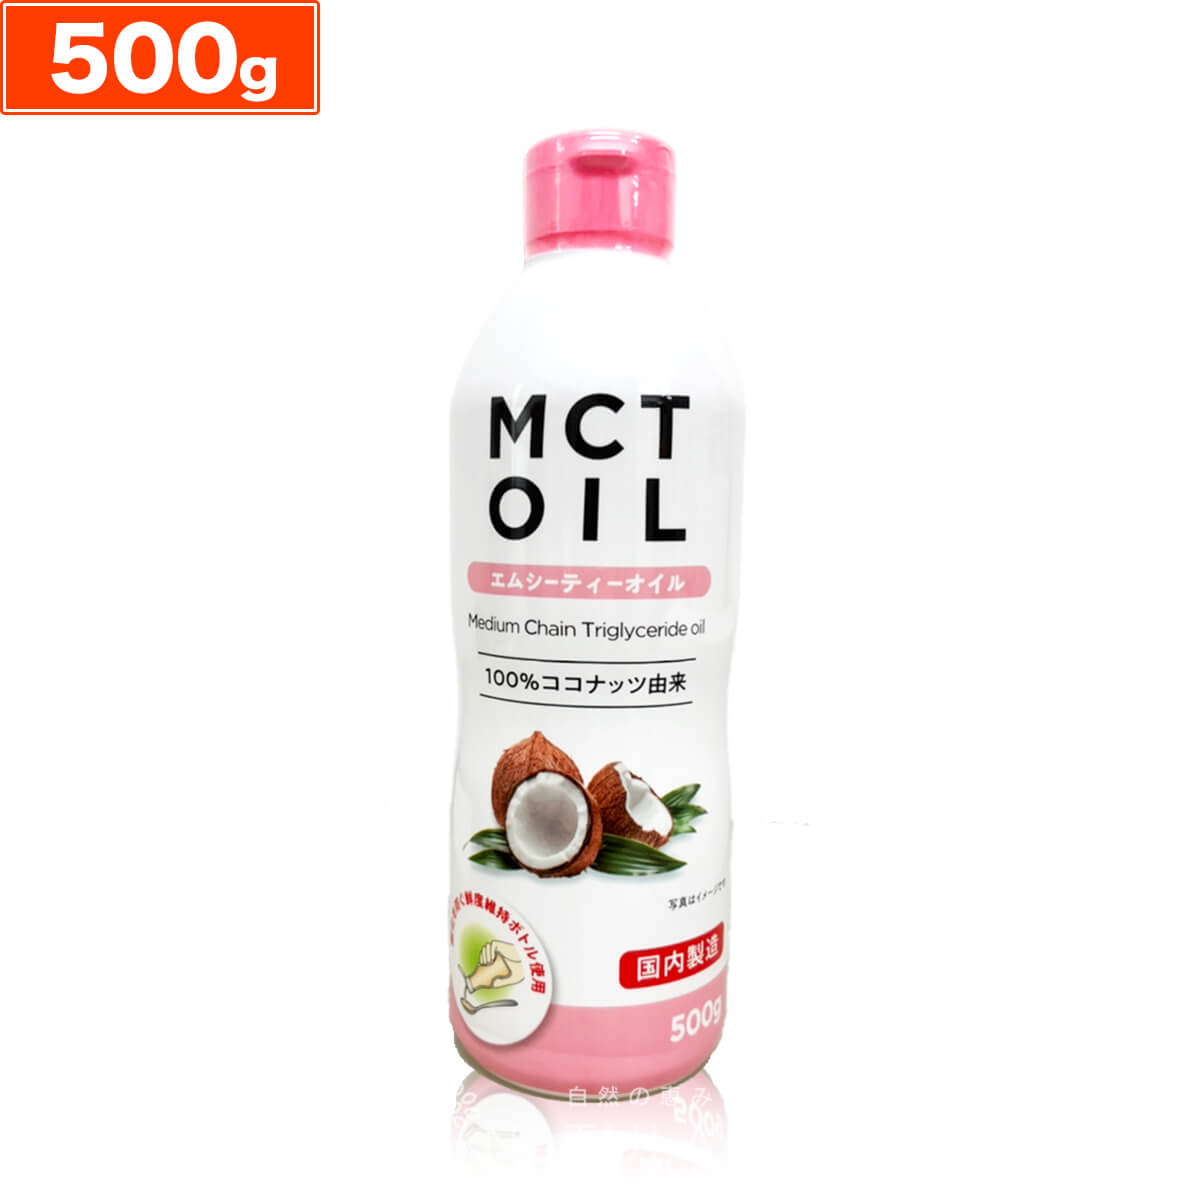 MCTオイル 500g 中鎖脂肪酸 mct mctオイル エムシーティー oil オイル 油 バターコーヒー ダイエット コーヒー ギー …